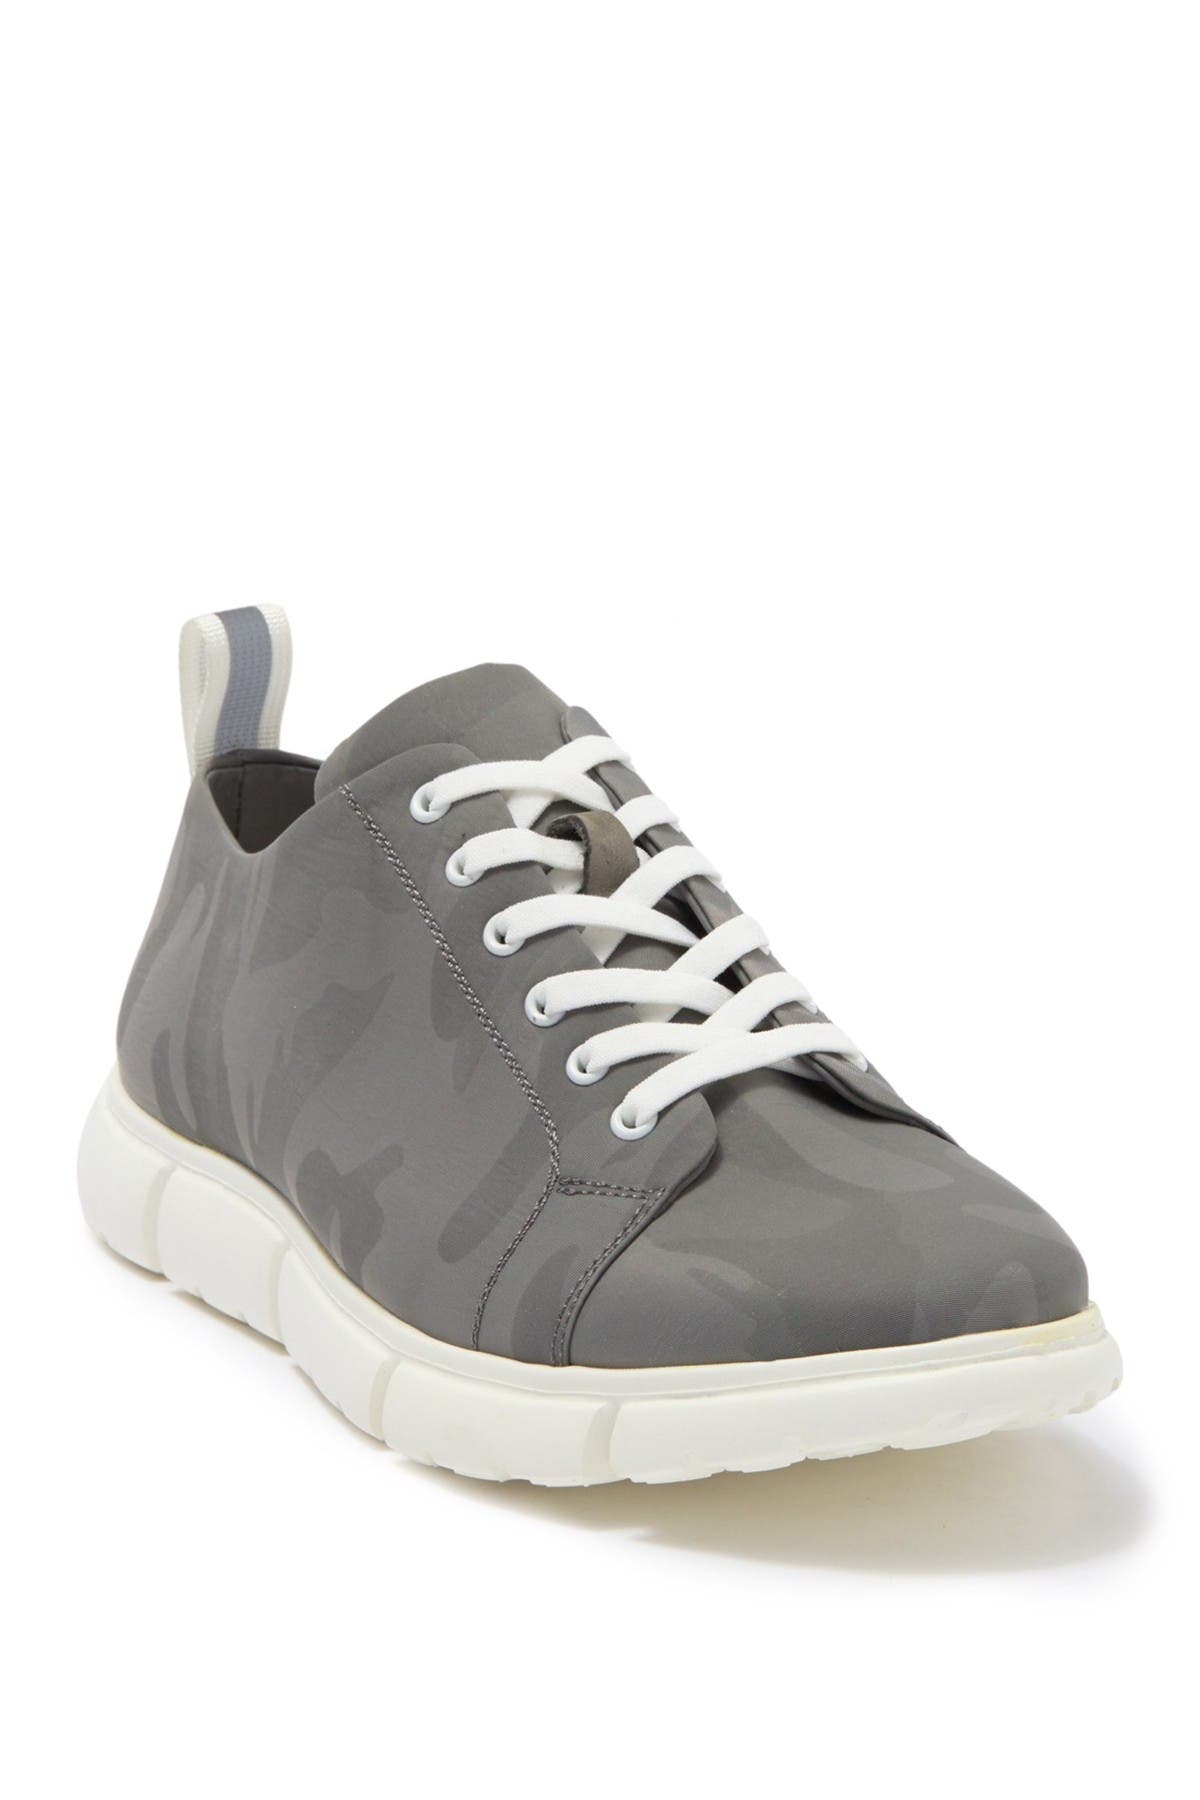 plain grey sneakers